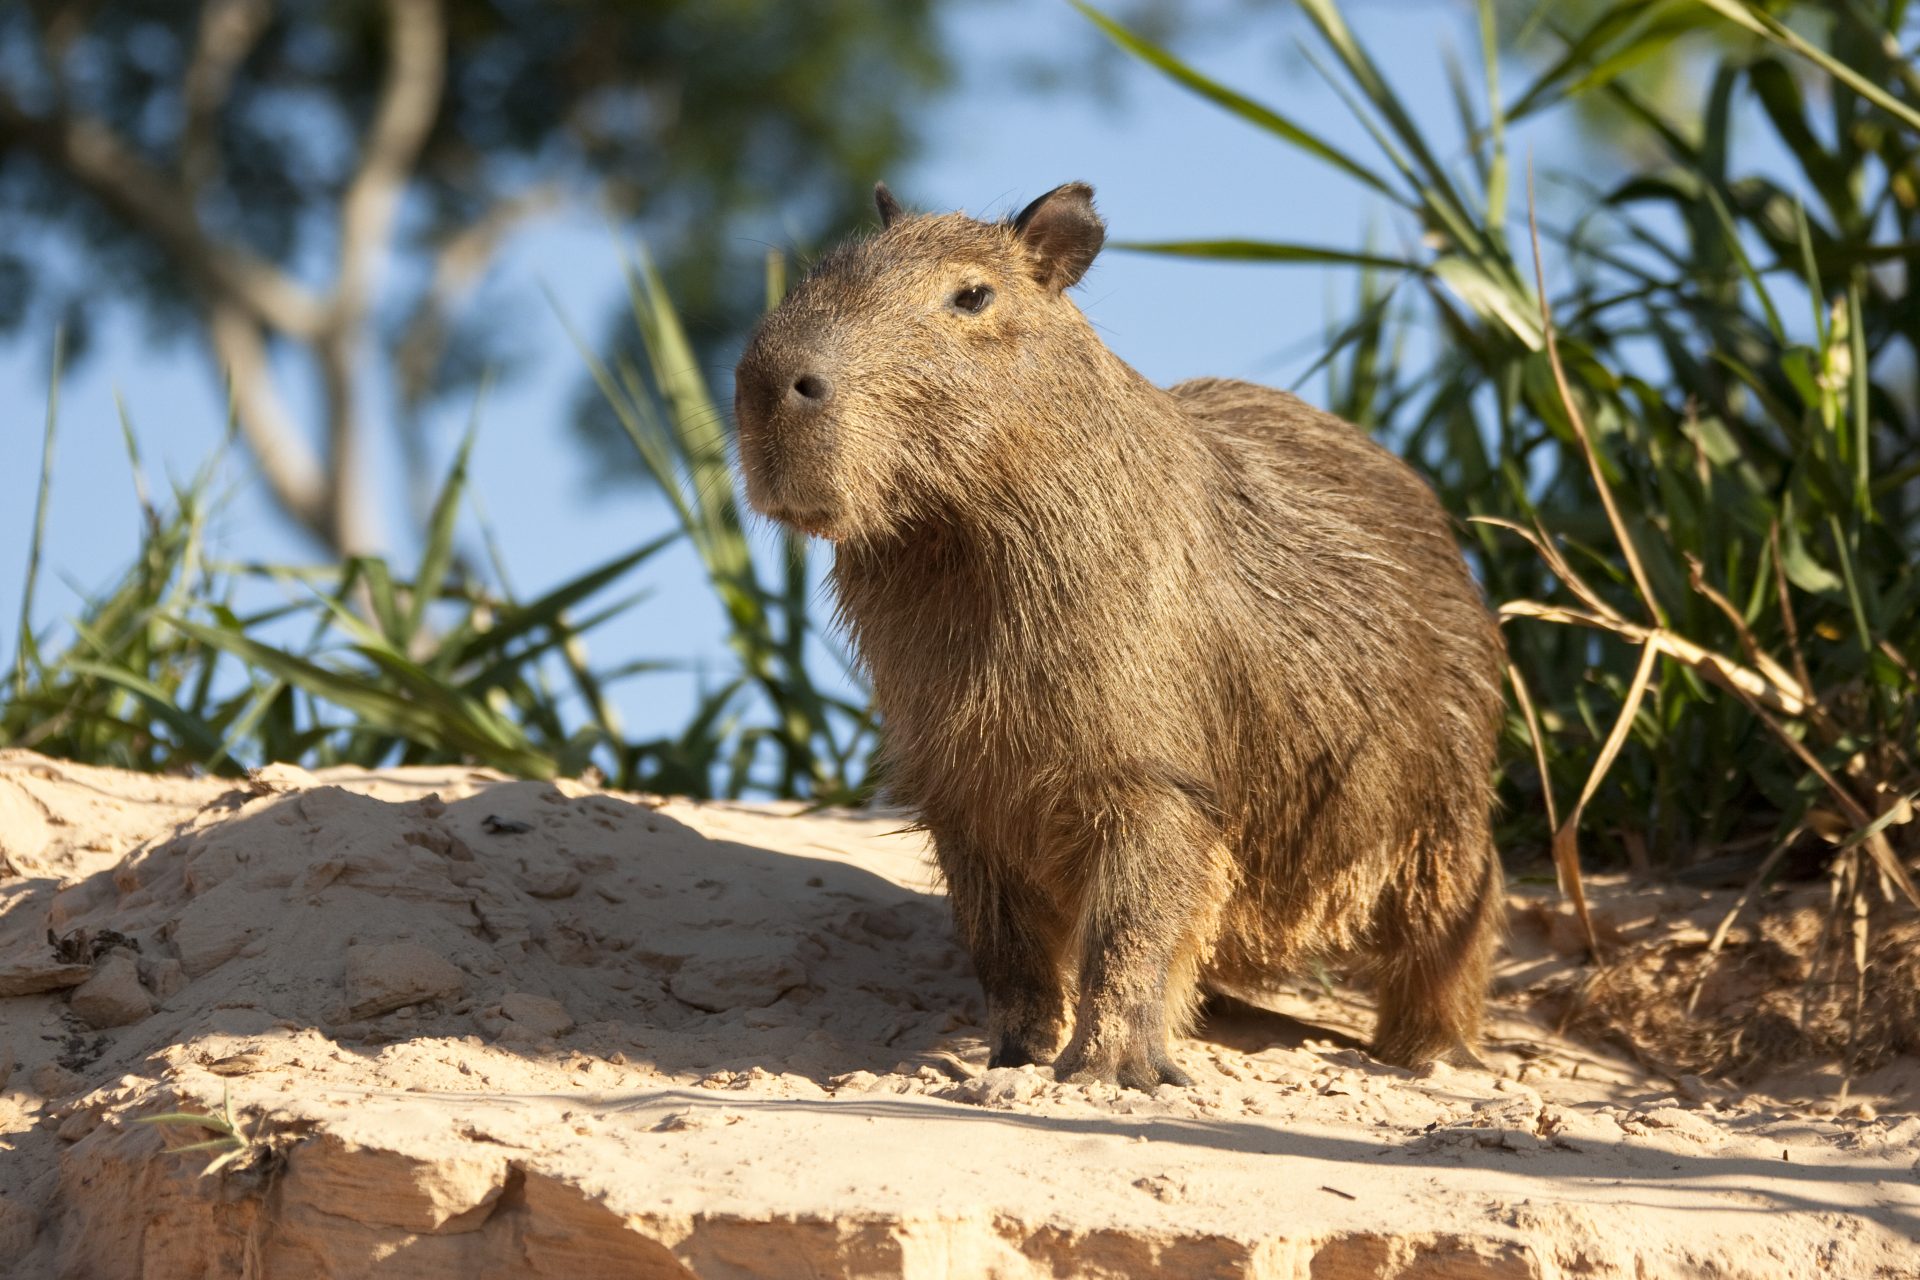 The capybara, an adorable animal going viral on social media